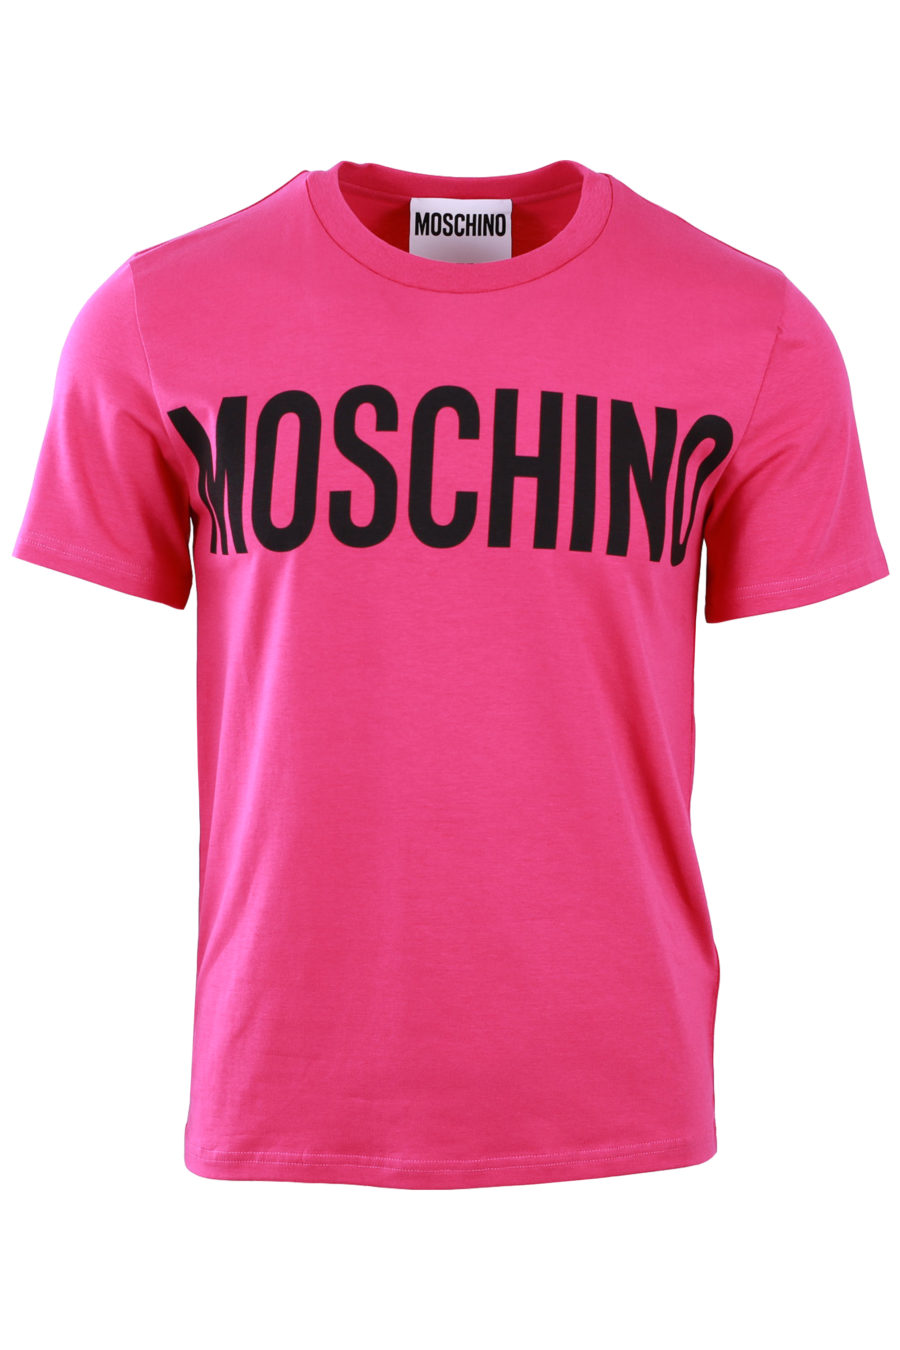 Pink T-shirt with black logo - 24ce74bb3016779d4546f8bb83b735961978c435